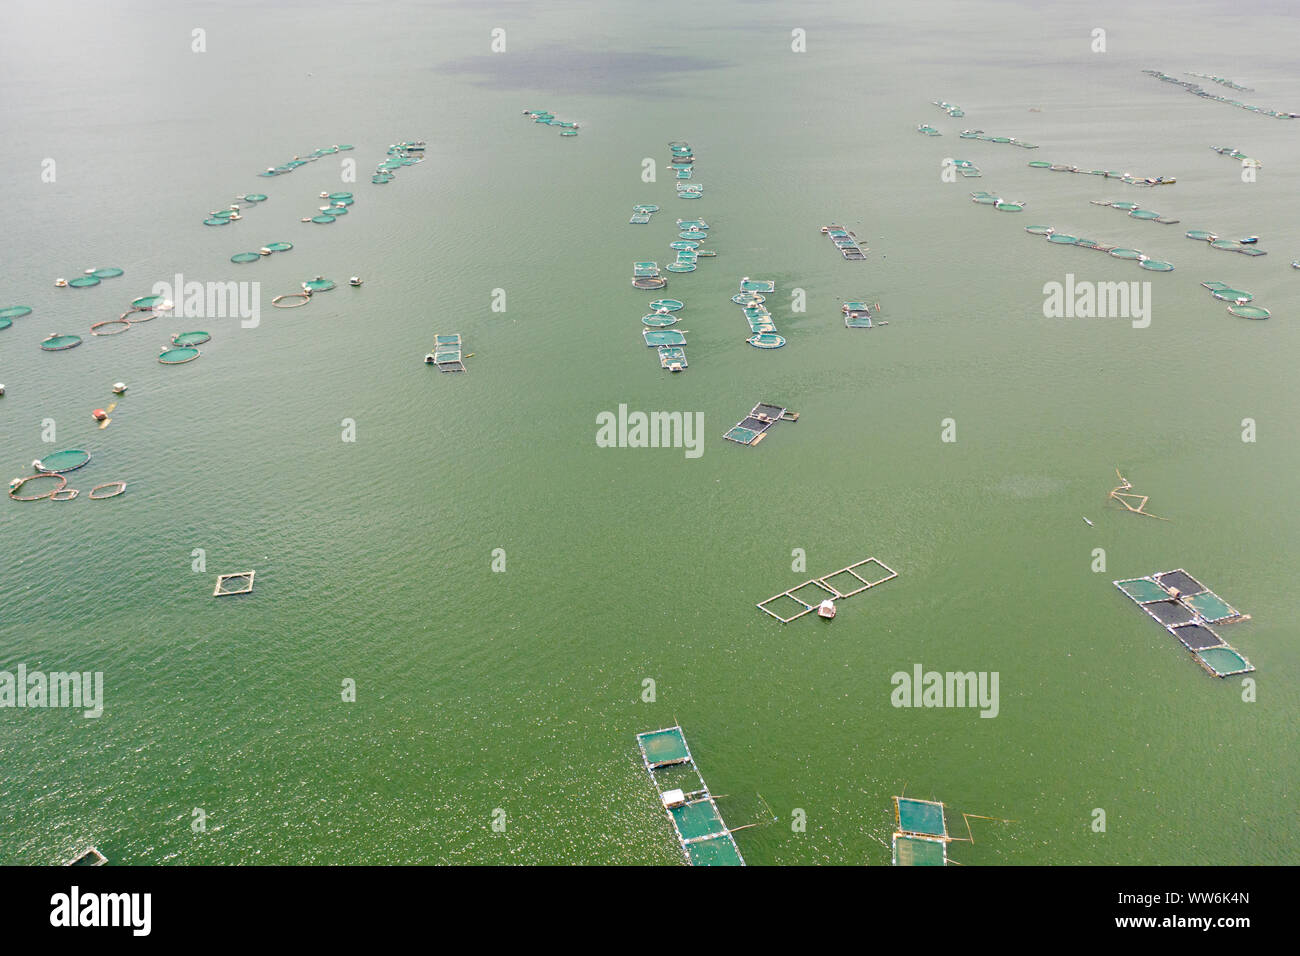 Fischzucht mit Käfigen für Fische und Garnelen auf dem See Taal, Ansicht von oben. Fisch Käfig für Tilapia, milchfisch Landwirtschaft Aquakultur oder Fischzucht Praktiken. Philippinen, Luzon. Stockfoto